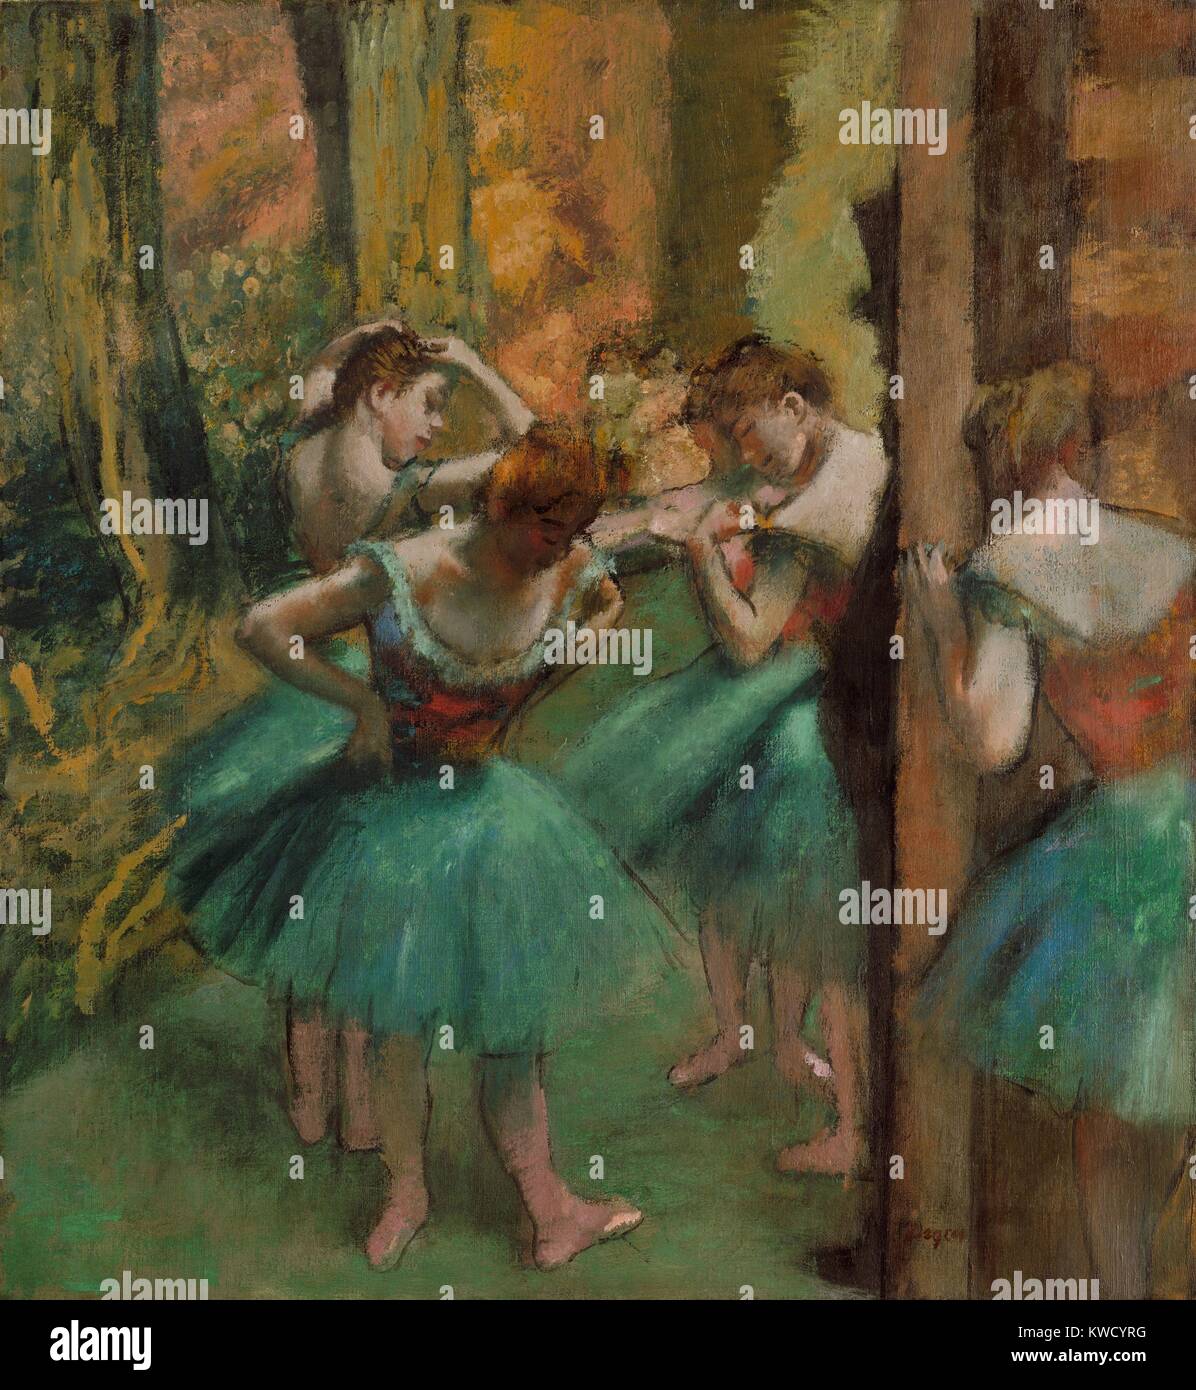 Ballerini, rosa e verde, di Edgar Degas, 1890, impressionista francese pittura, olio su tela. Il profilo scuro mostra un top-cappello patrono dell'Opera di Parigi, che è stato consentito di essere guardate i ballerini in ali durante una performance (BSLOC 2017 3 110) Foto Stock